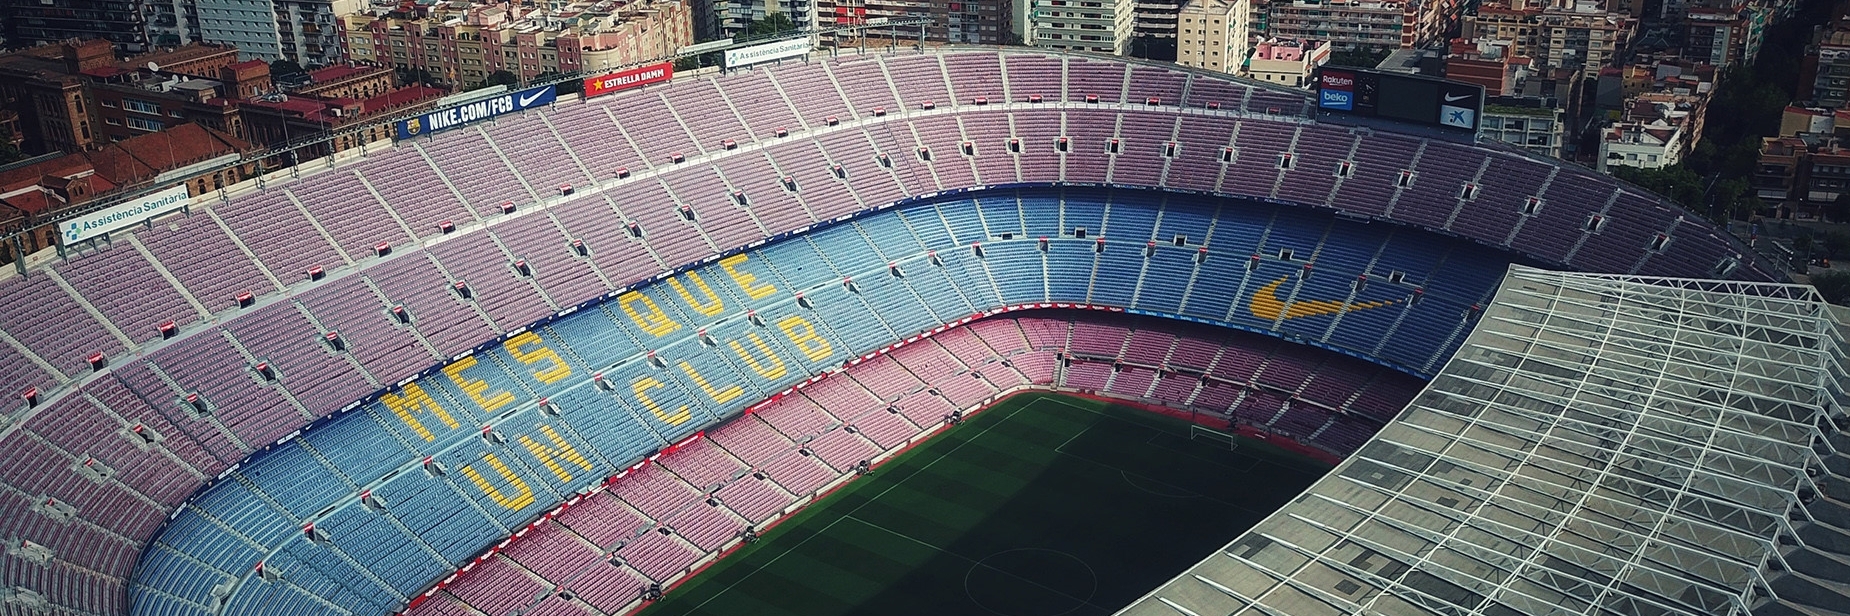 Sân Vận Động Nou Camp (Nou Camp) Barcelona, Tây Ban Nha